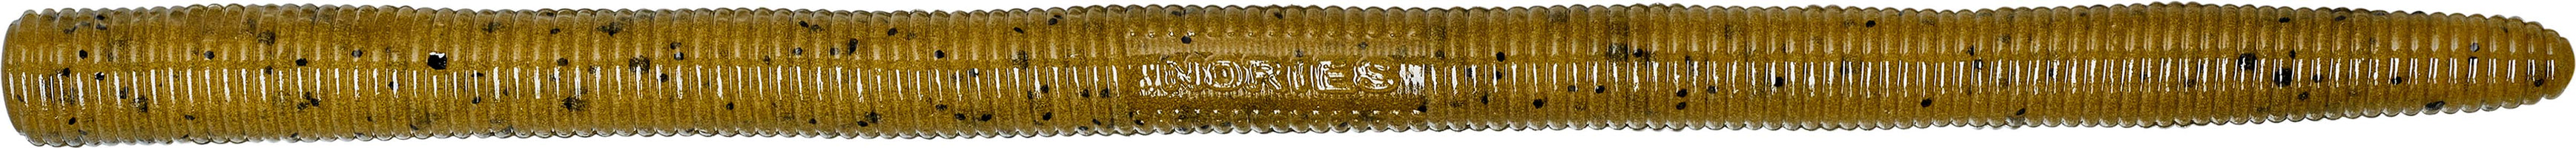 Nories 5.25 Inch Latterie Neko Rig Worm - 8 Pack